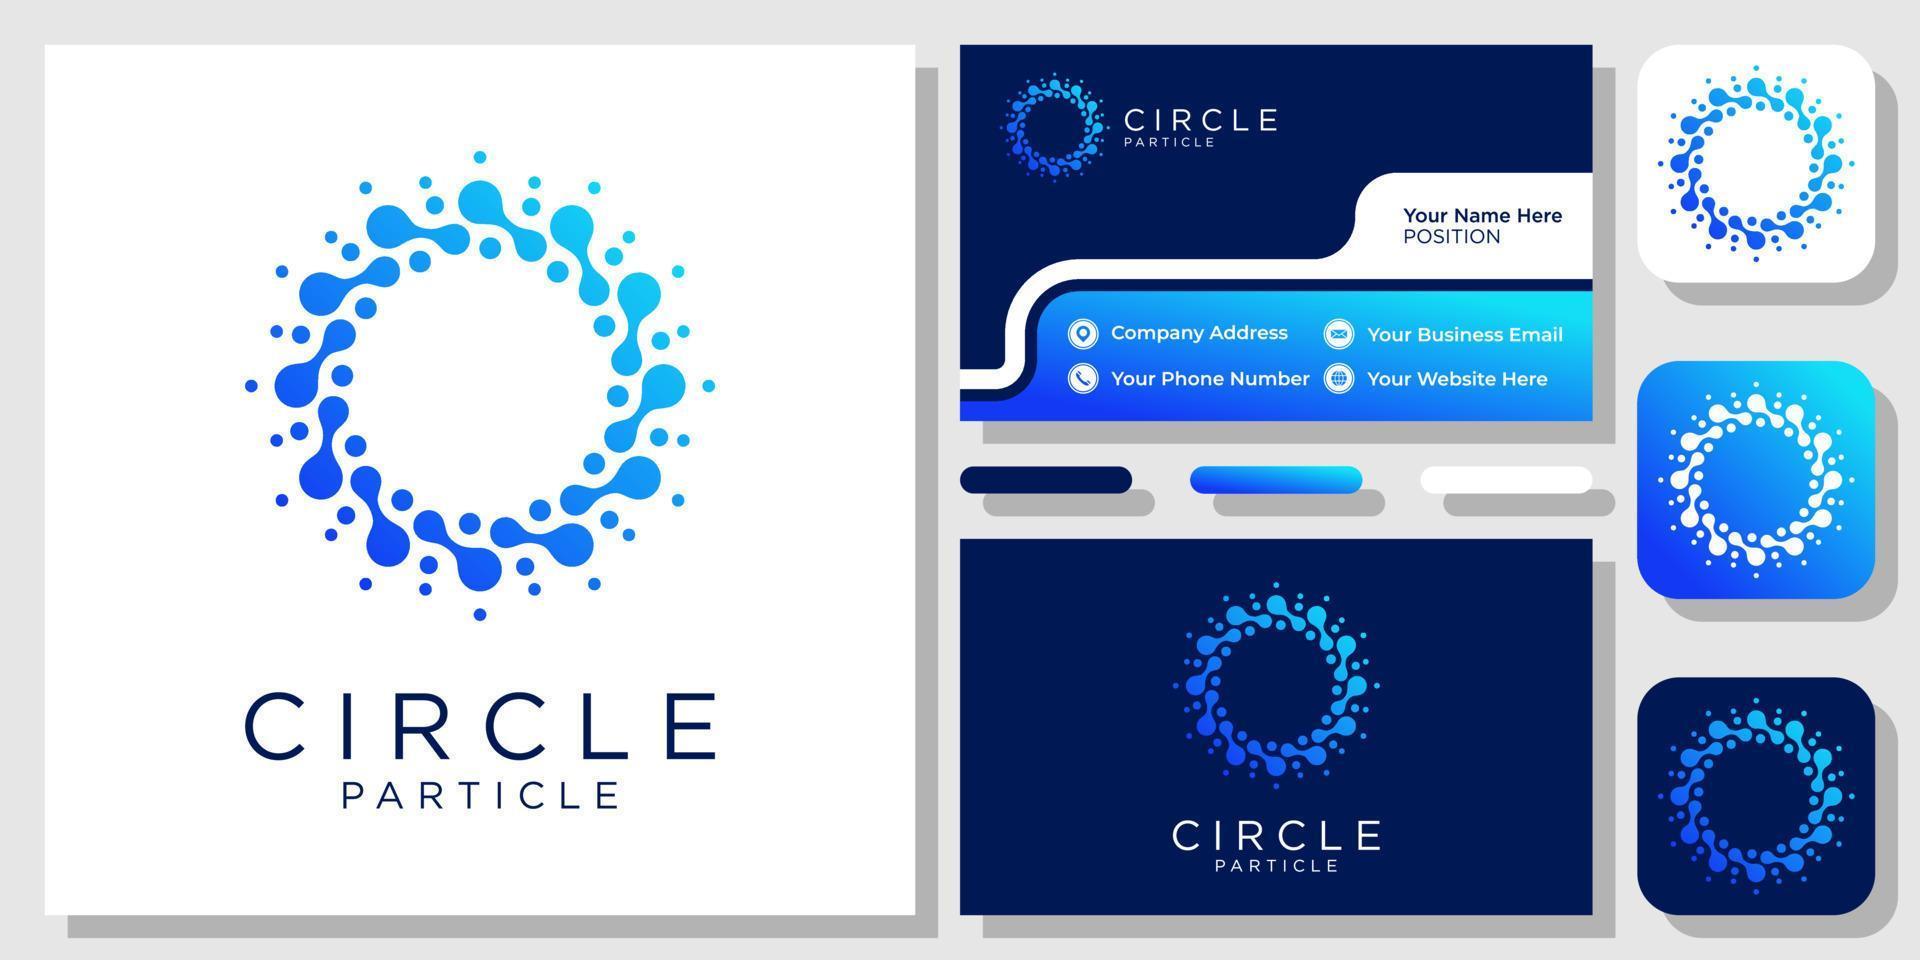 Kreis-Partikel-Technologie-Verbindungsdaten digitales Atom-Symbol-Logo-Design mit Visitenkartenvorlage vektor